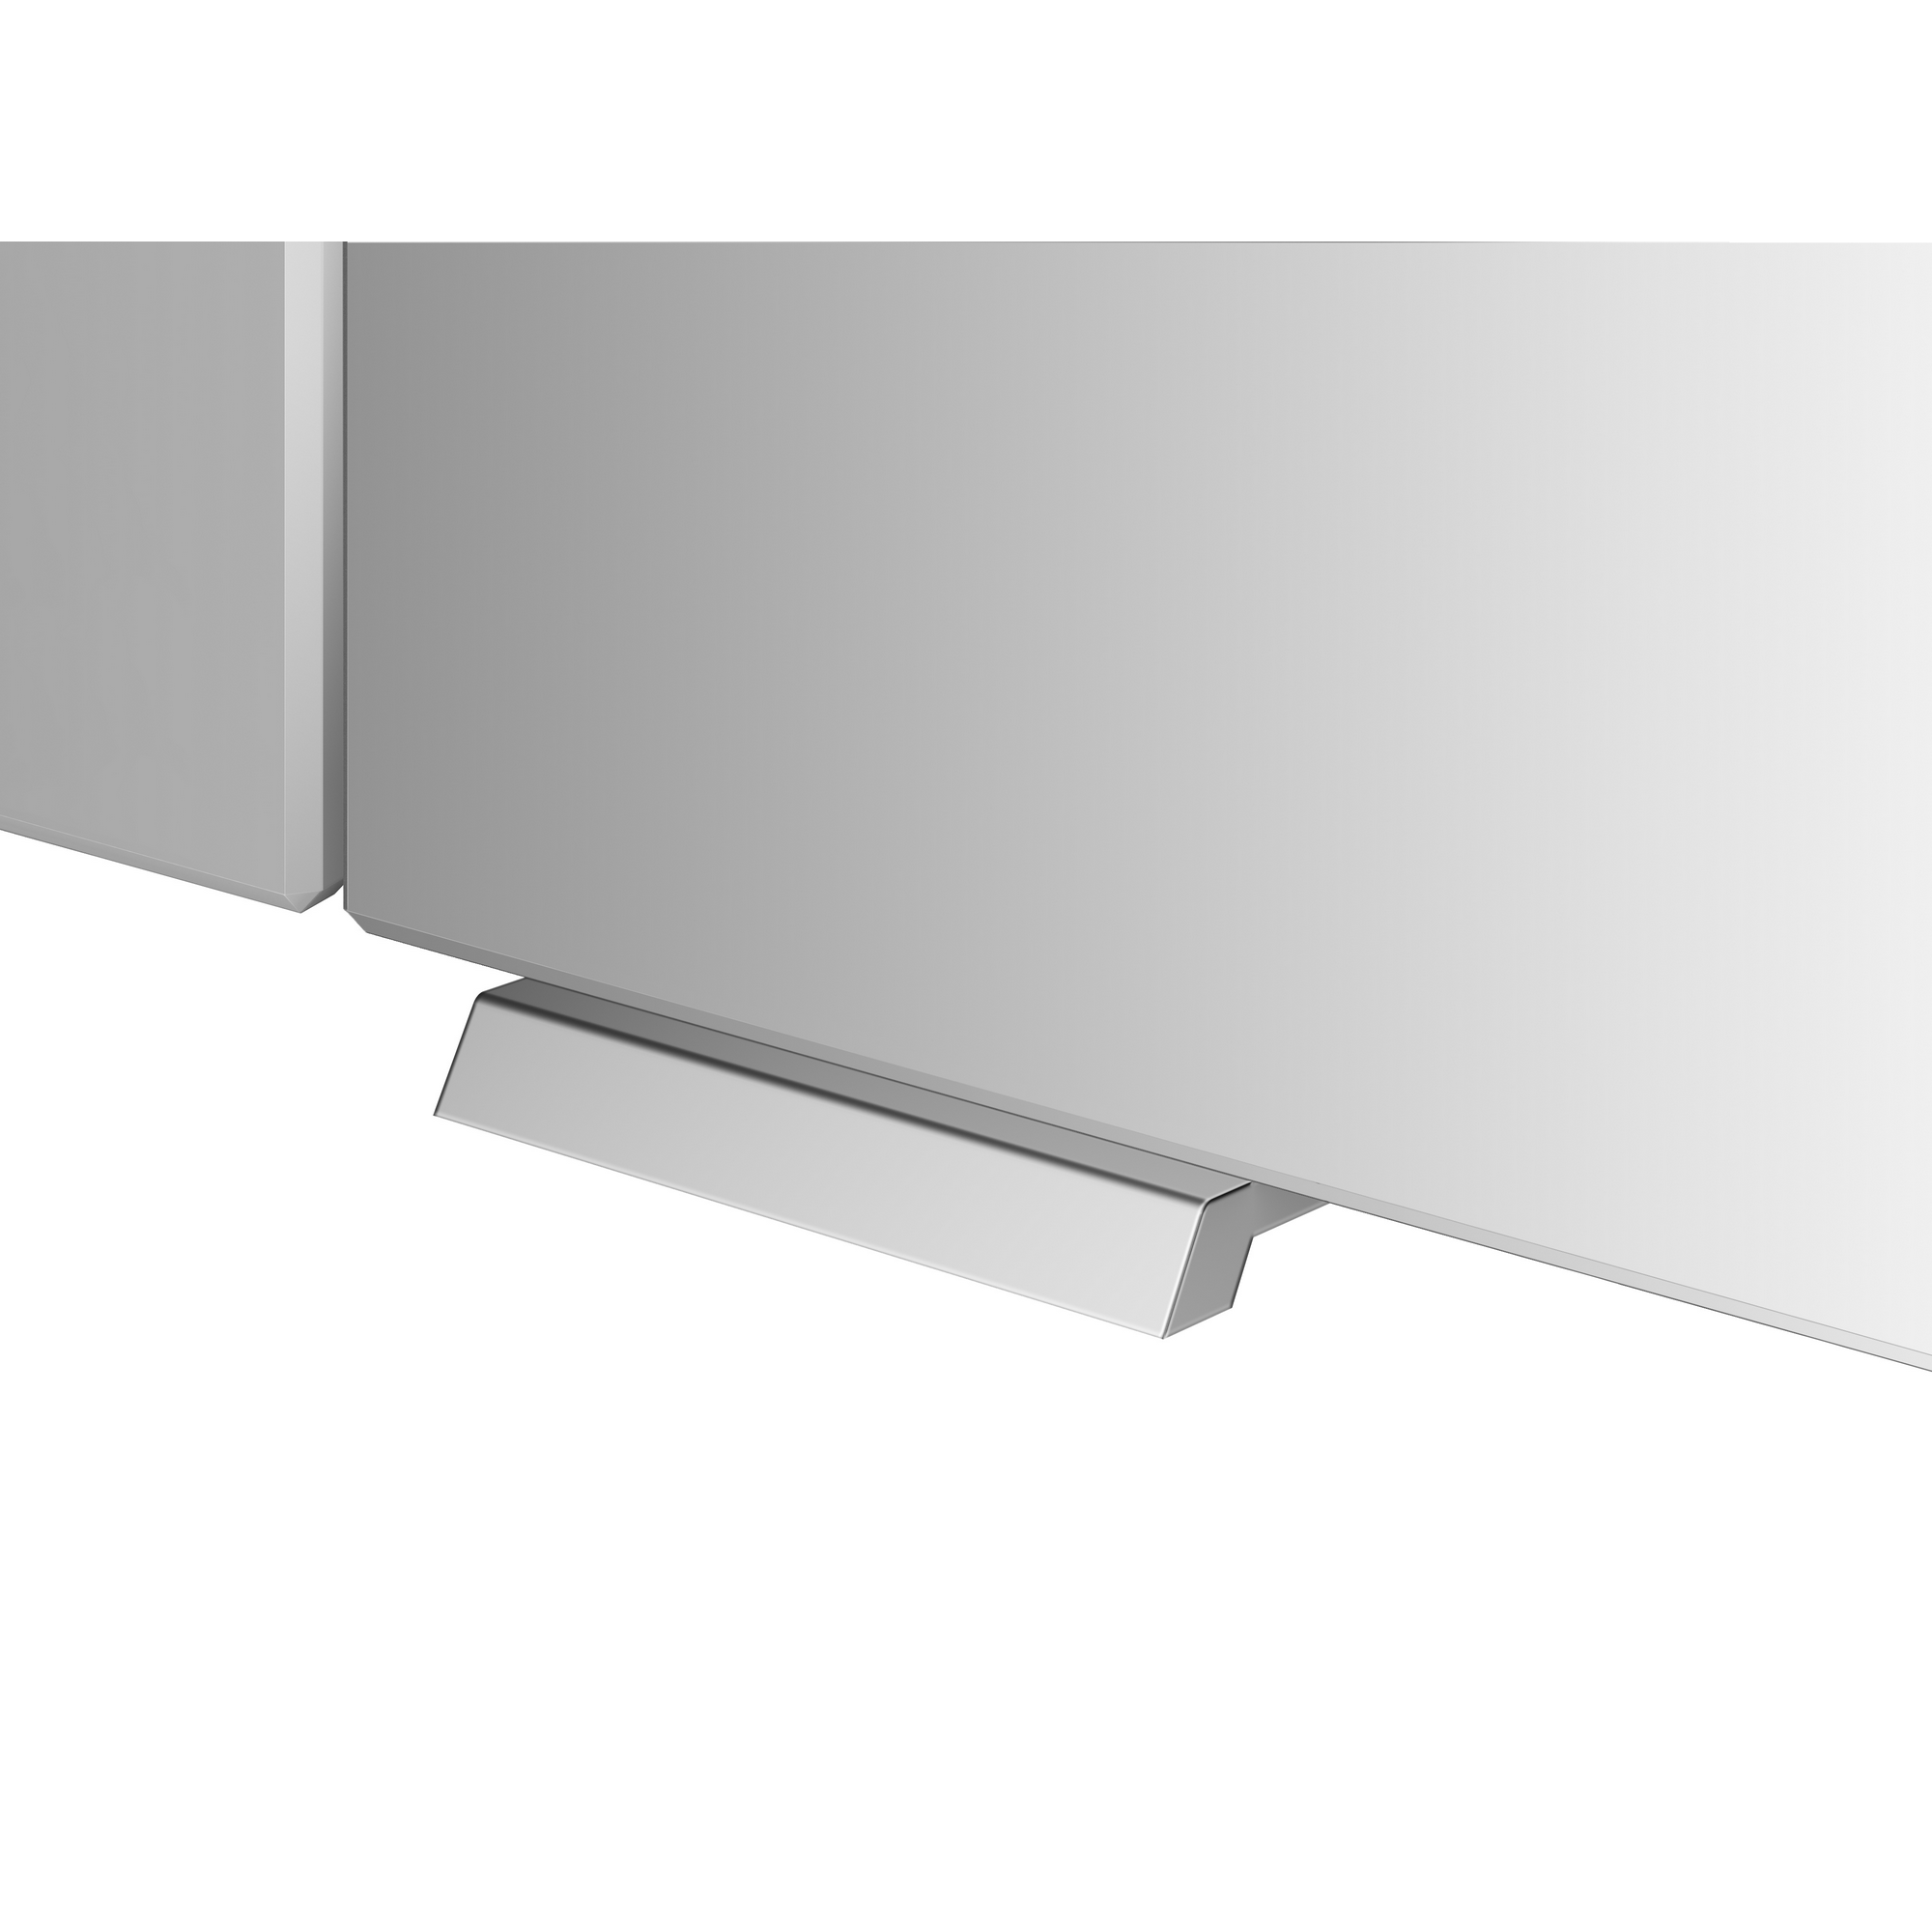 LED-Spiegelschrank 'KHX' anthrazit 100,4 x 74 x 14,2 cm + product picture